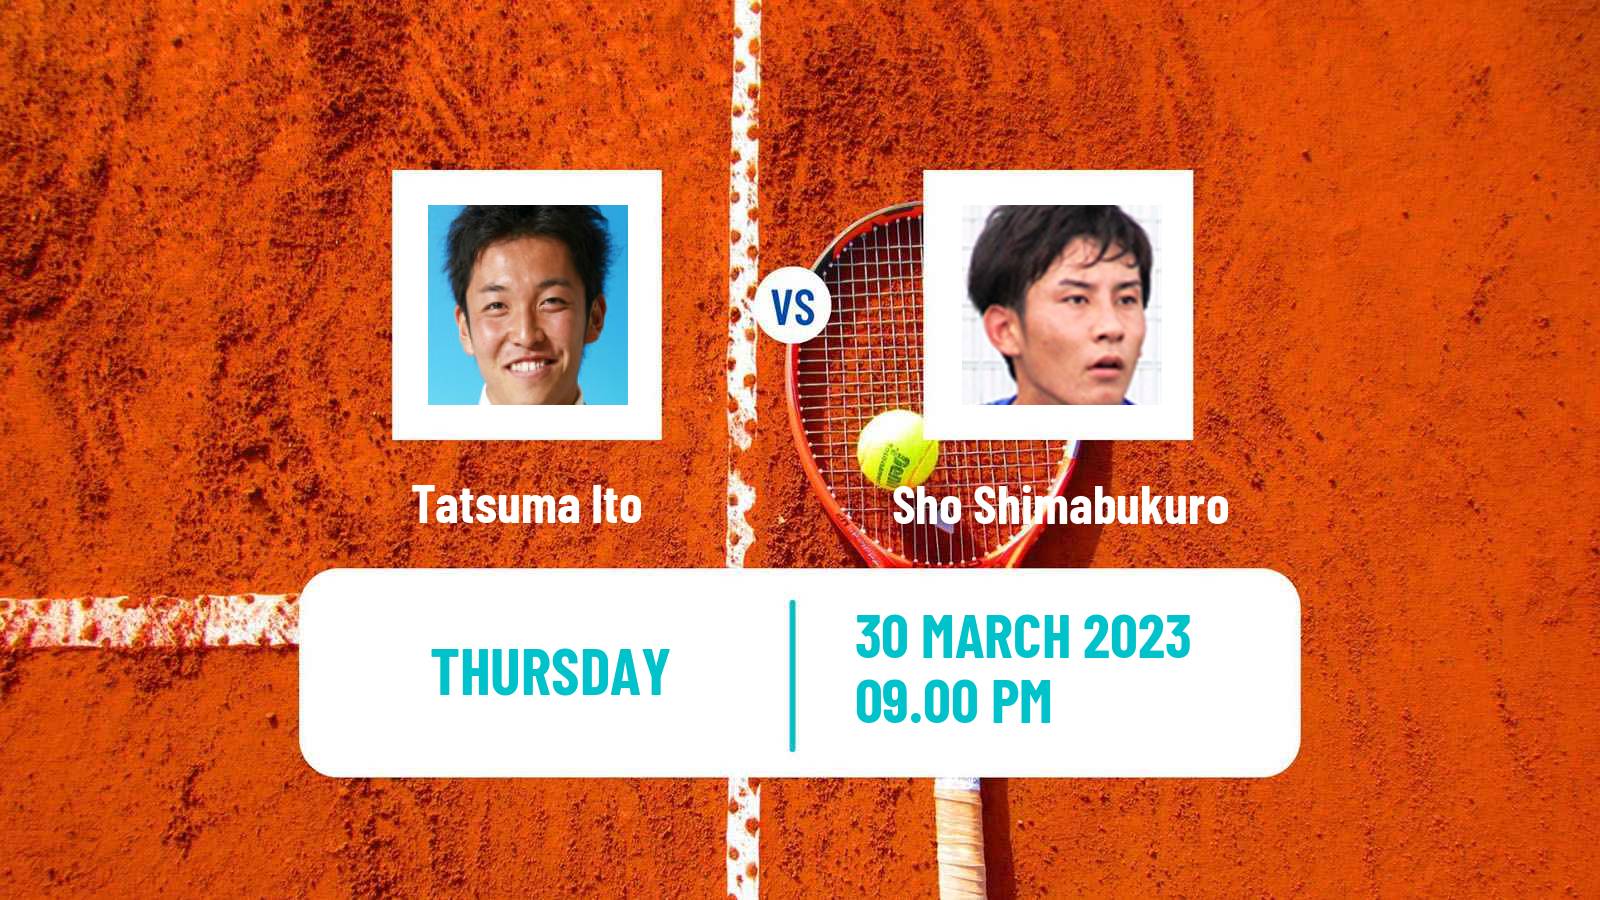 Tennis ITF Tournaments Tatsuma Ito - Sho Shimabukuro